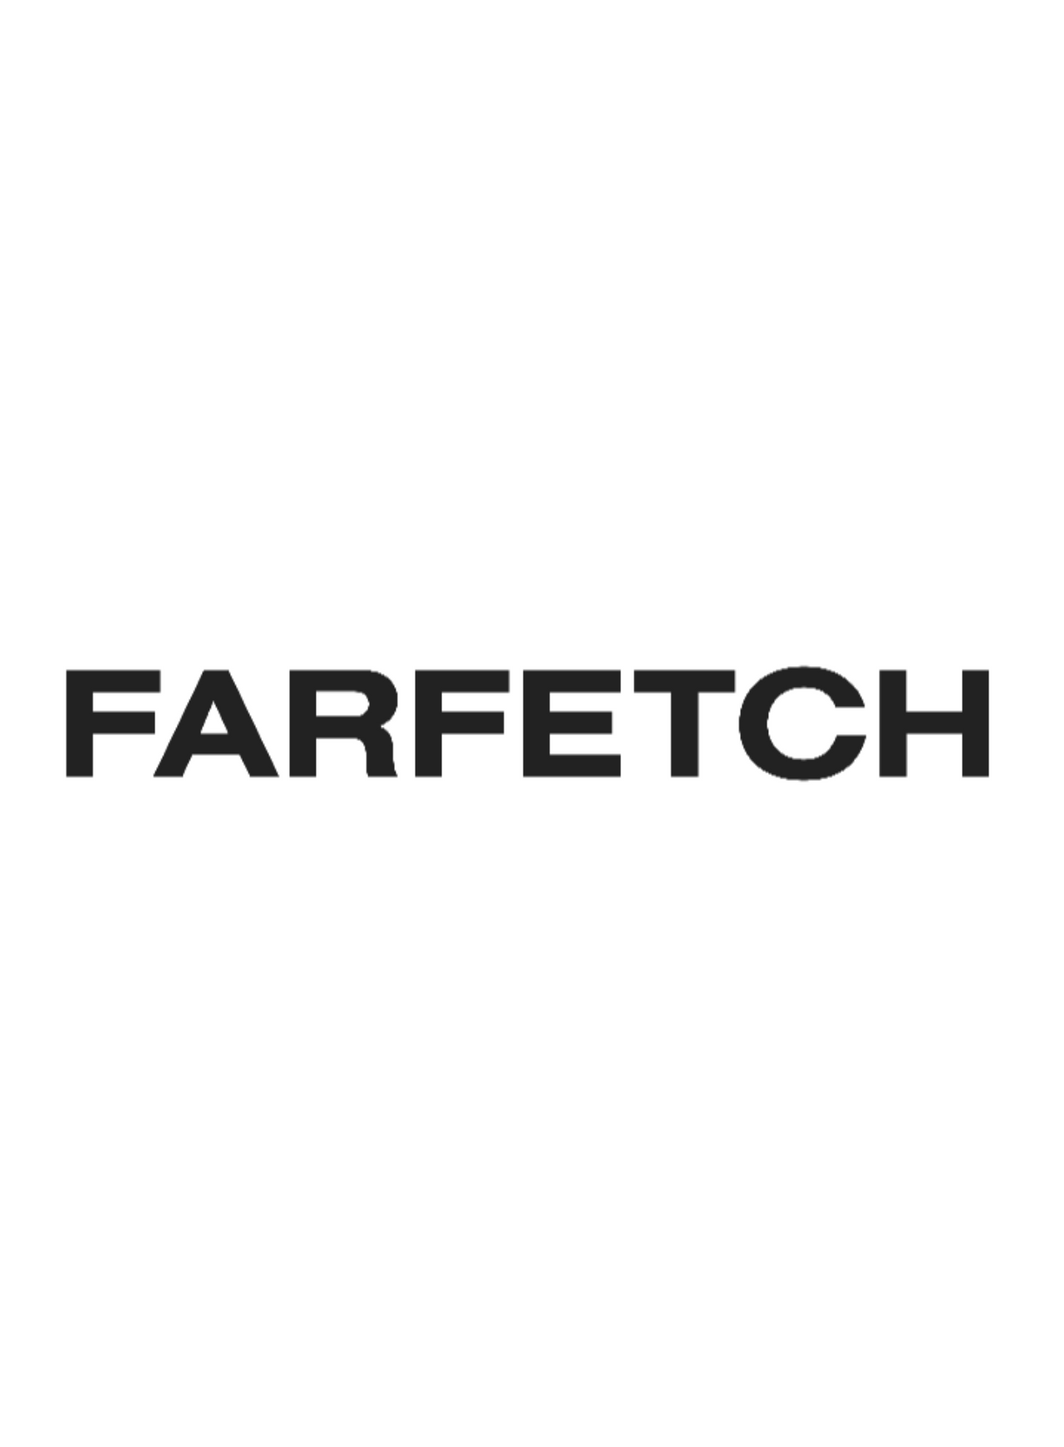 Farfetch a connu une légère croissance au troisième trimestre 2022.